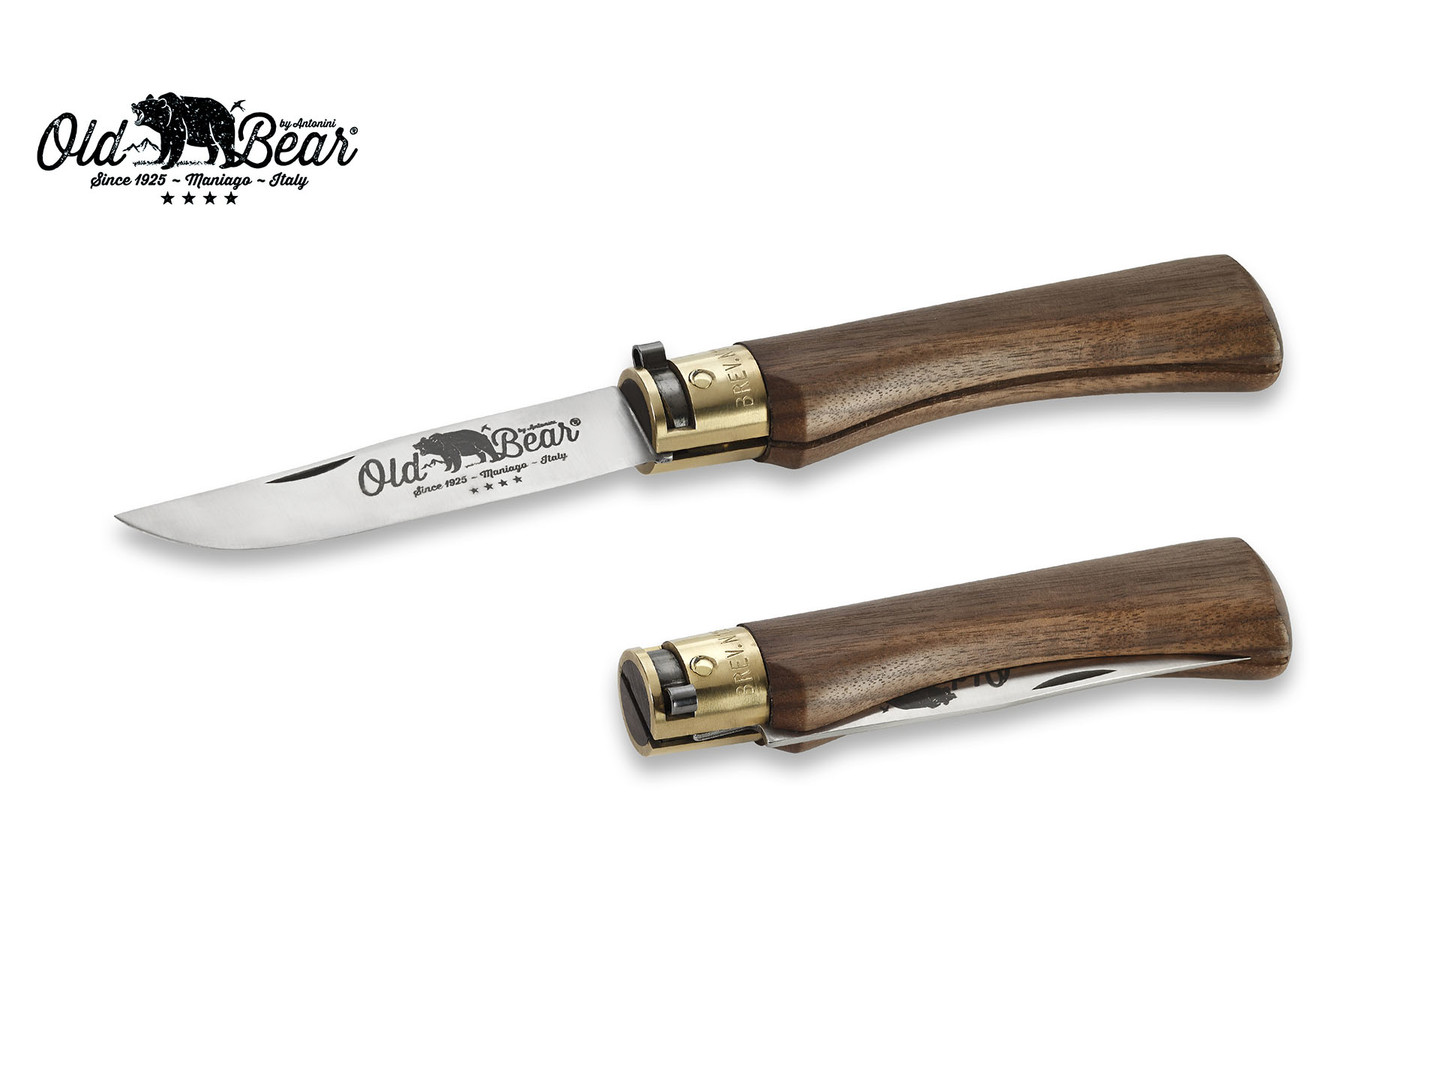 Нож Antonini Old Bear Classical Walnut L 9307/21_LN нержавеющая сталь AISI 420 рукоять орех, латунь